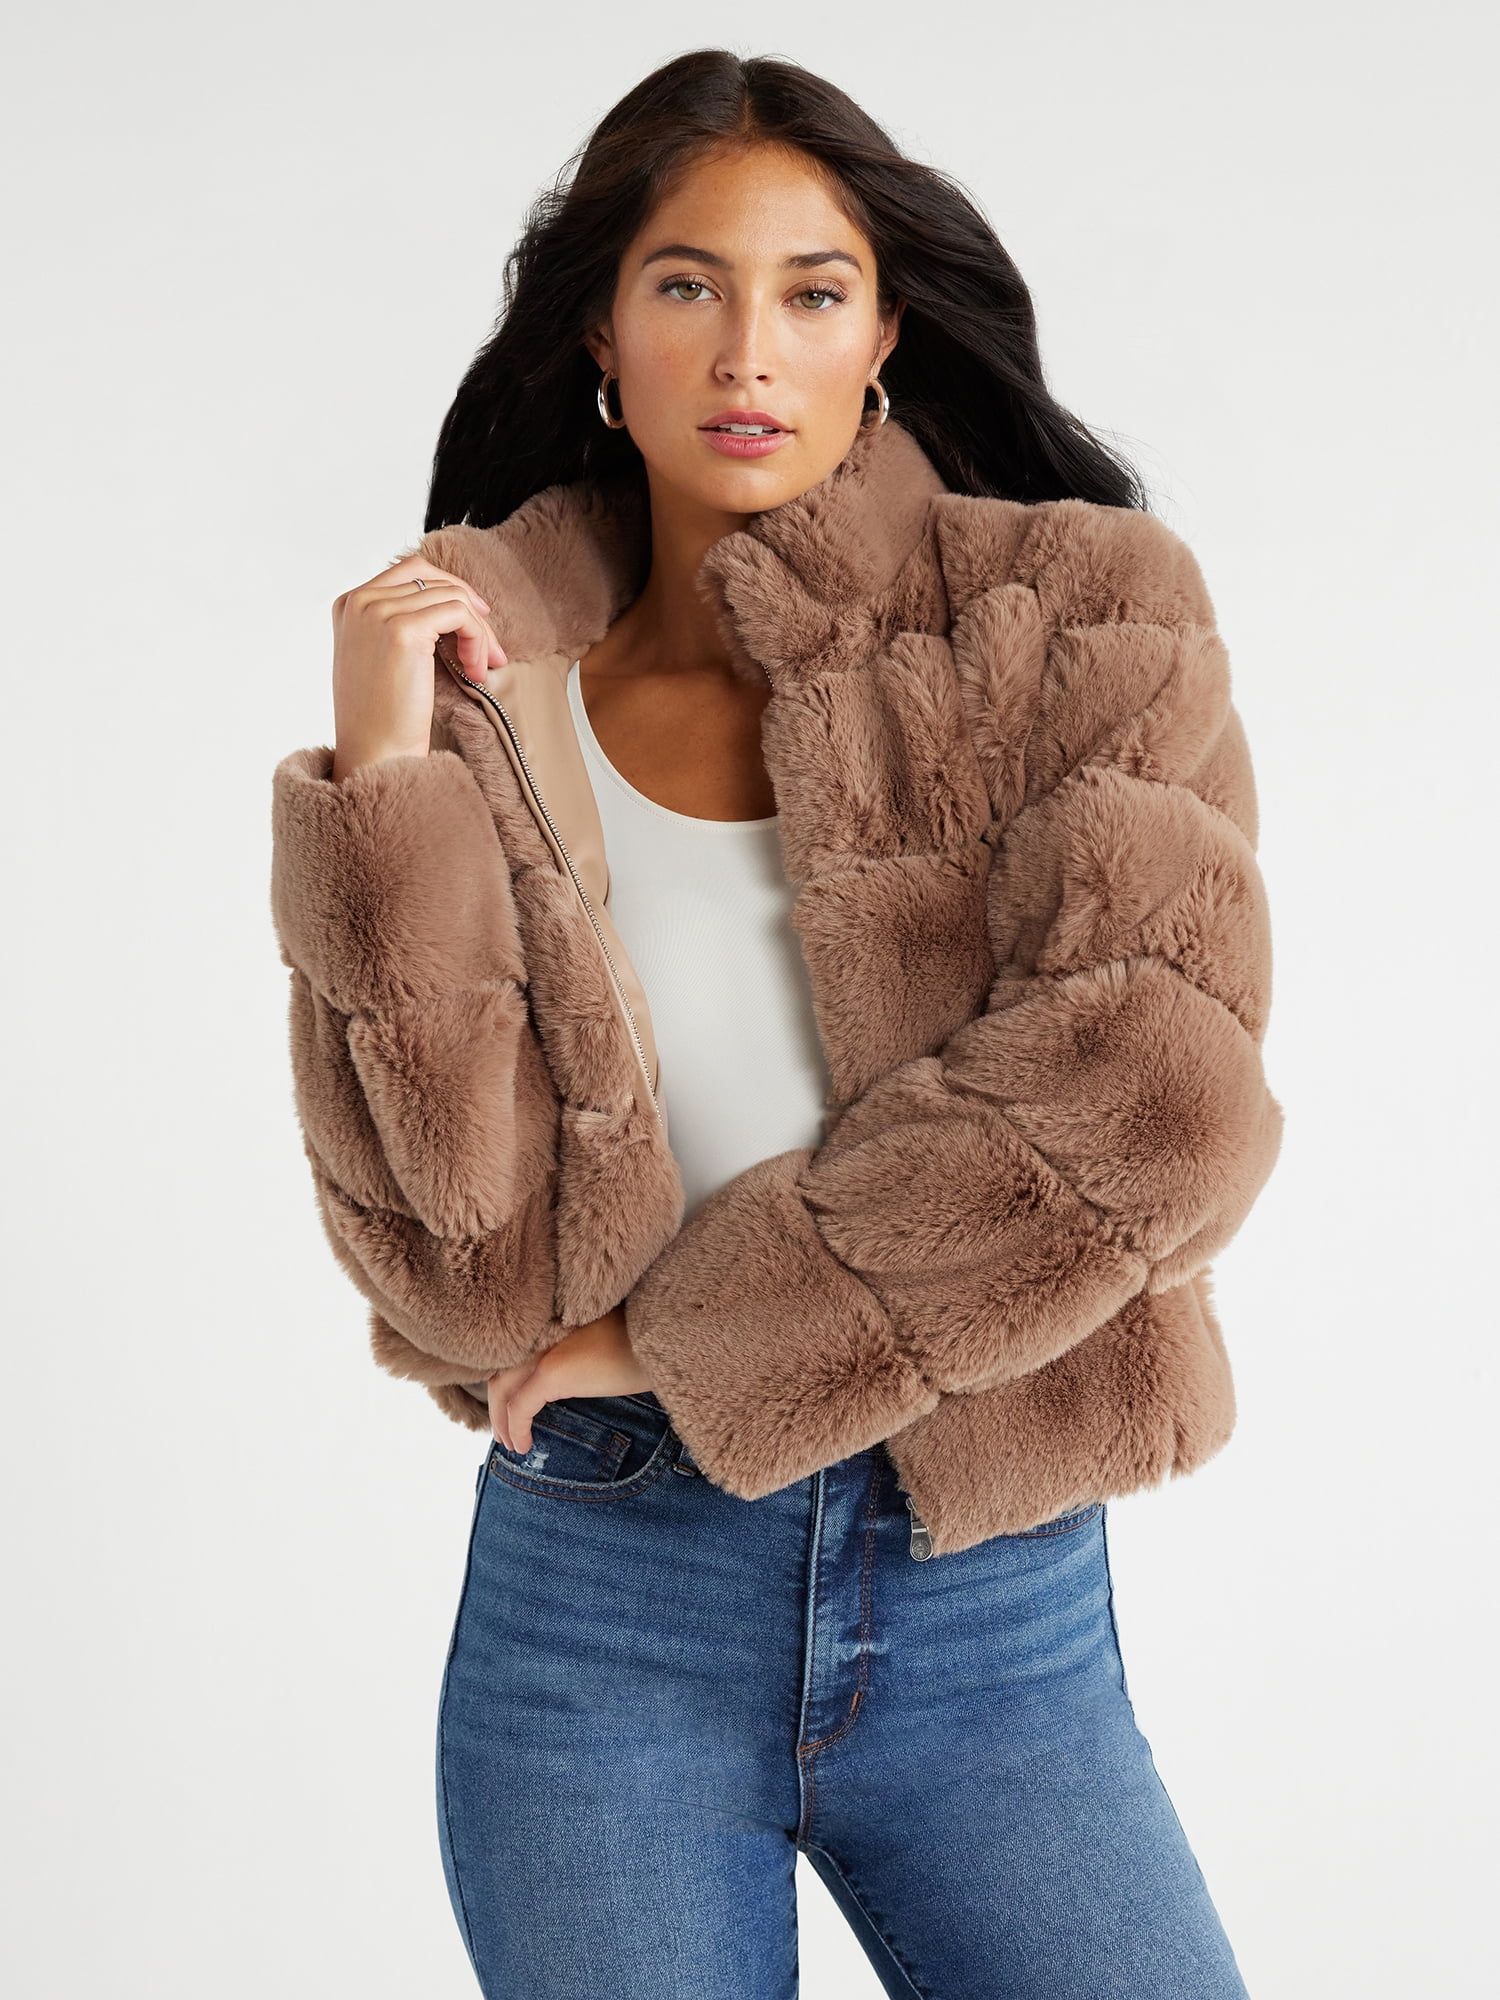 Sofia Jeans Women's Faux Fur Chubby Jacket, Sizes XXS-3XL | Walmart (US)